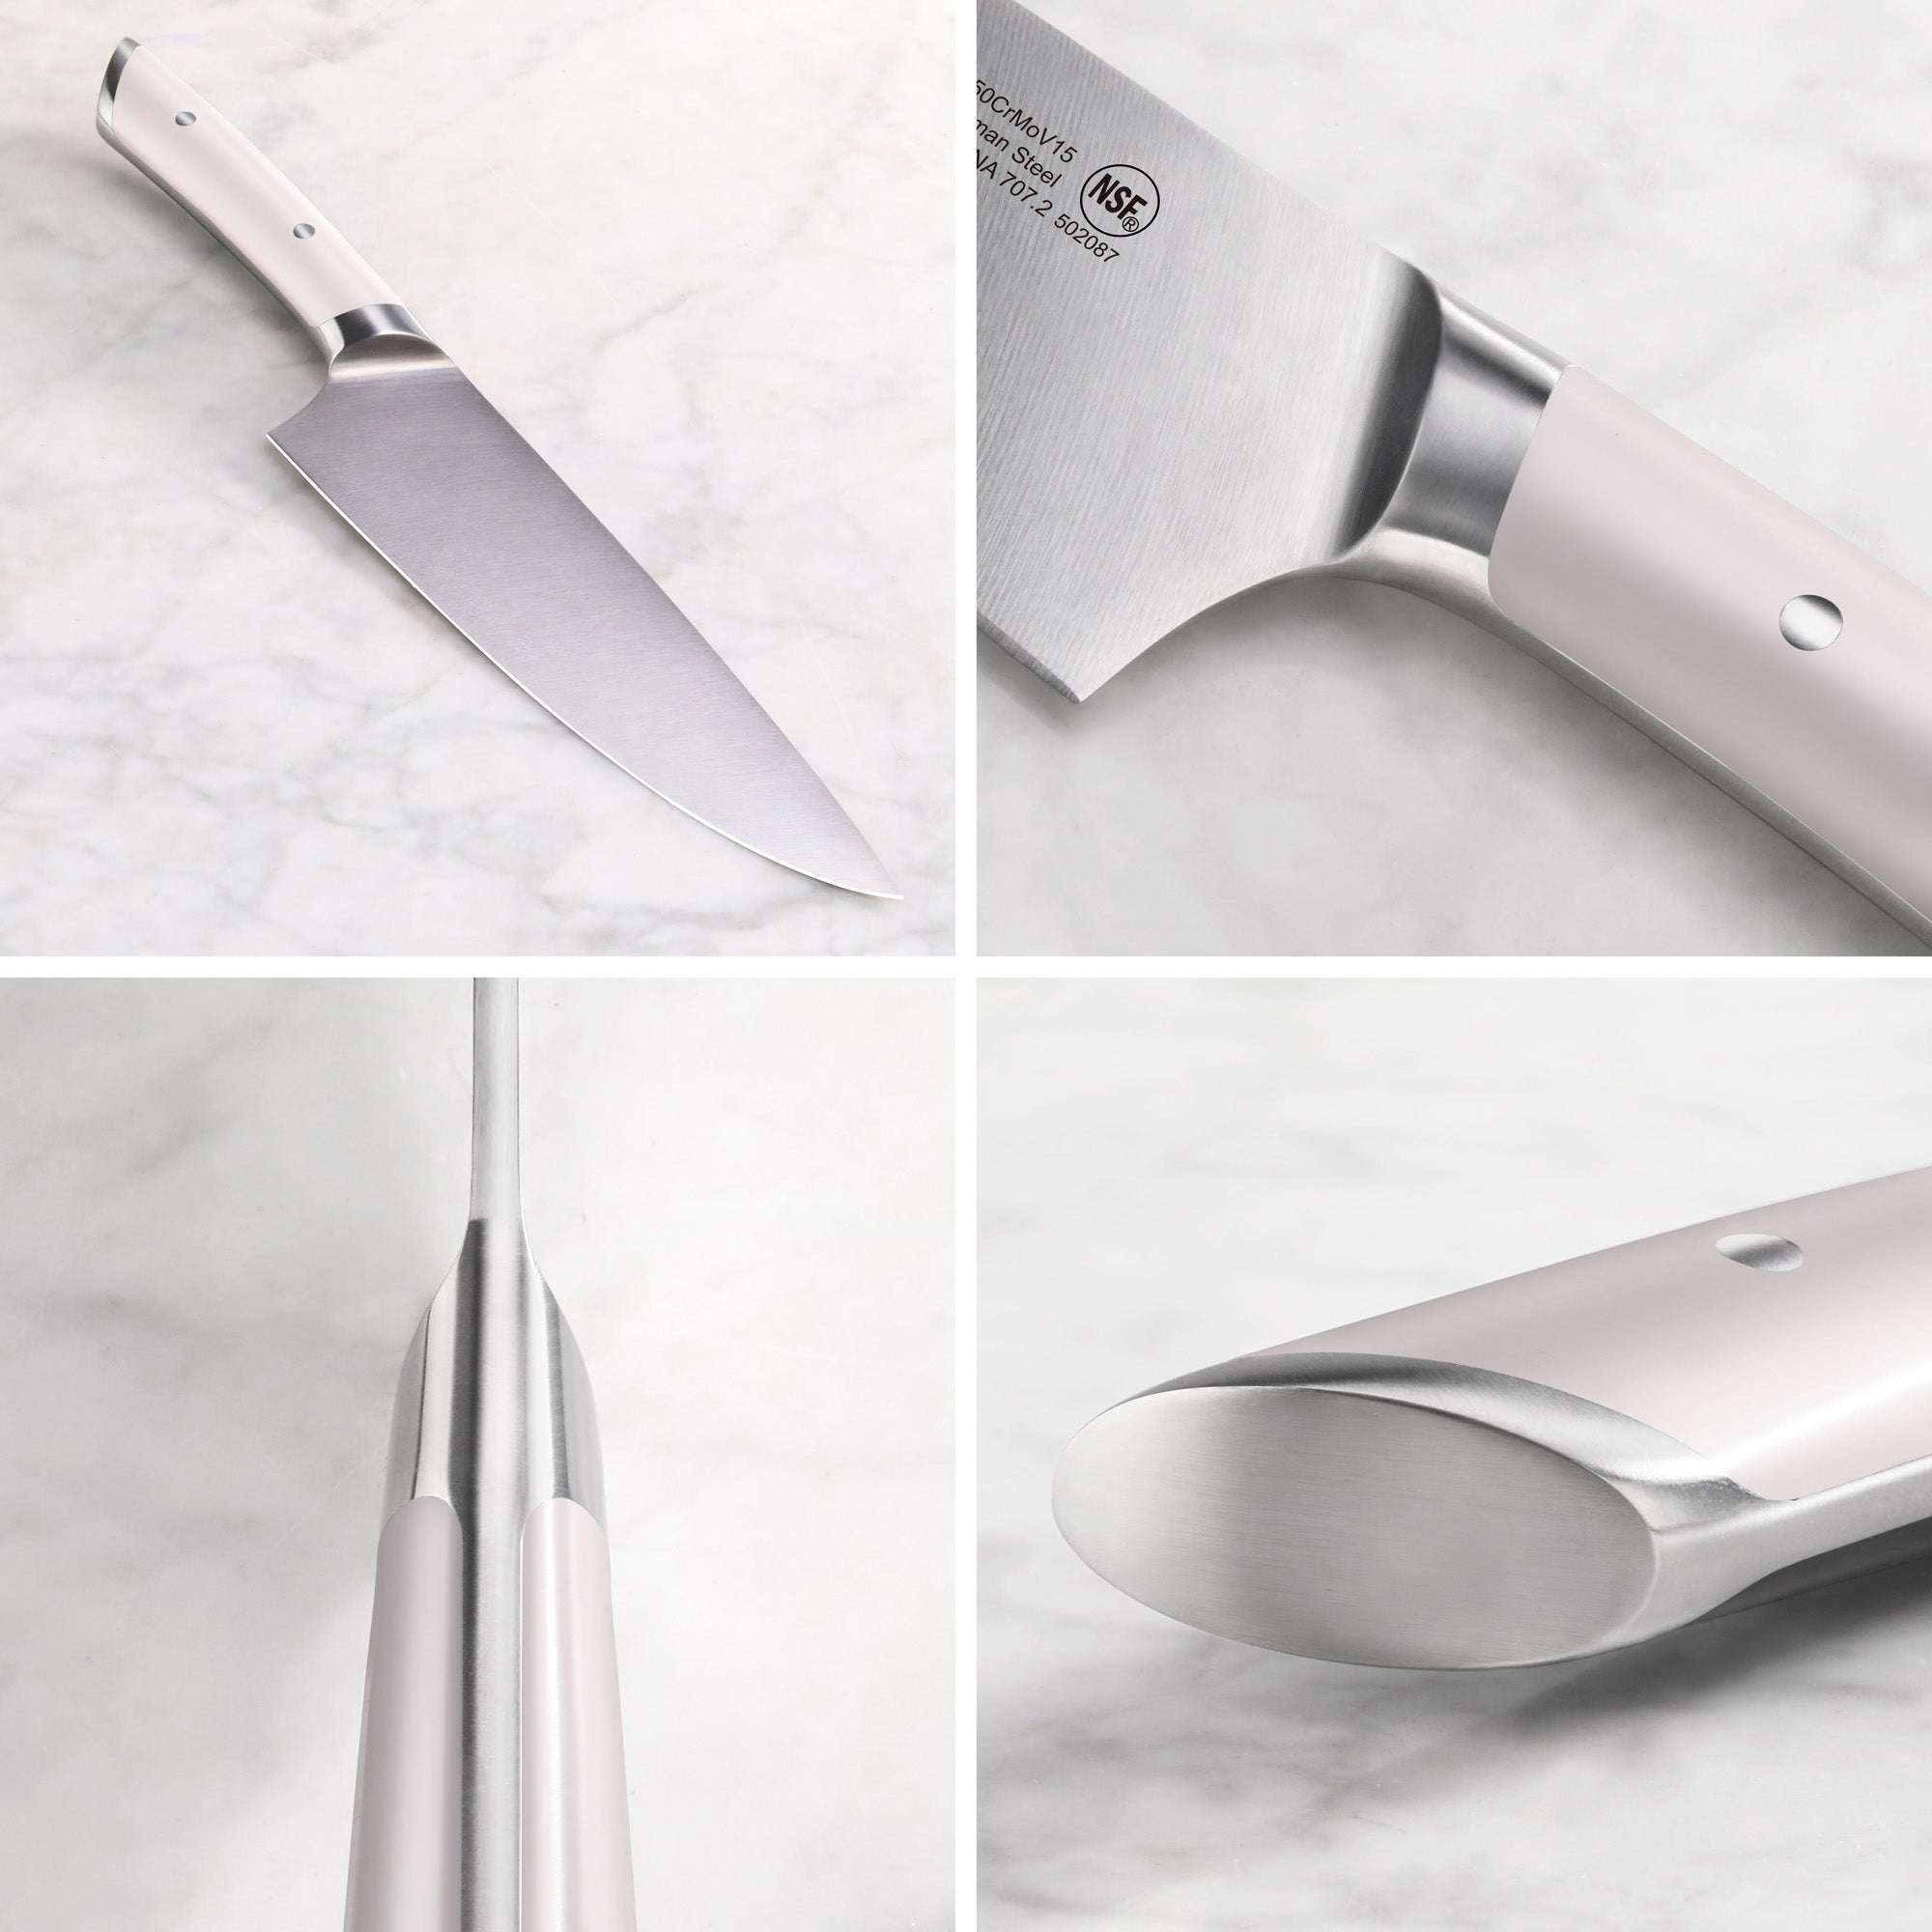 Cangshan HELENA Series German Steel 10-piece Knife Block Set, White